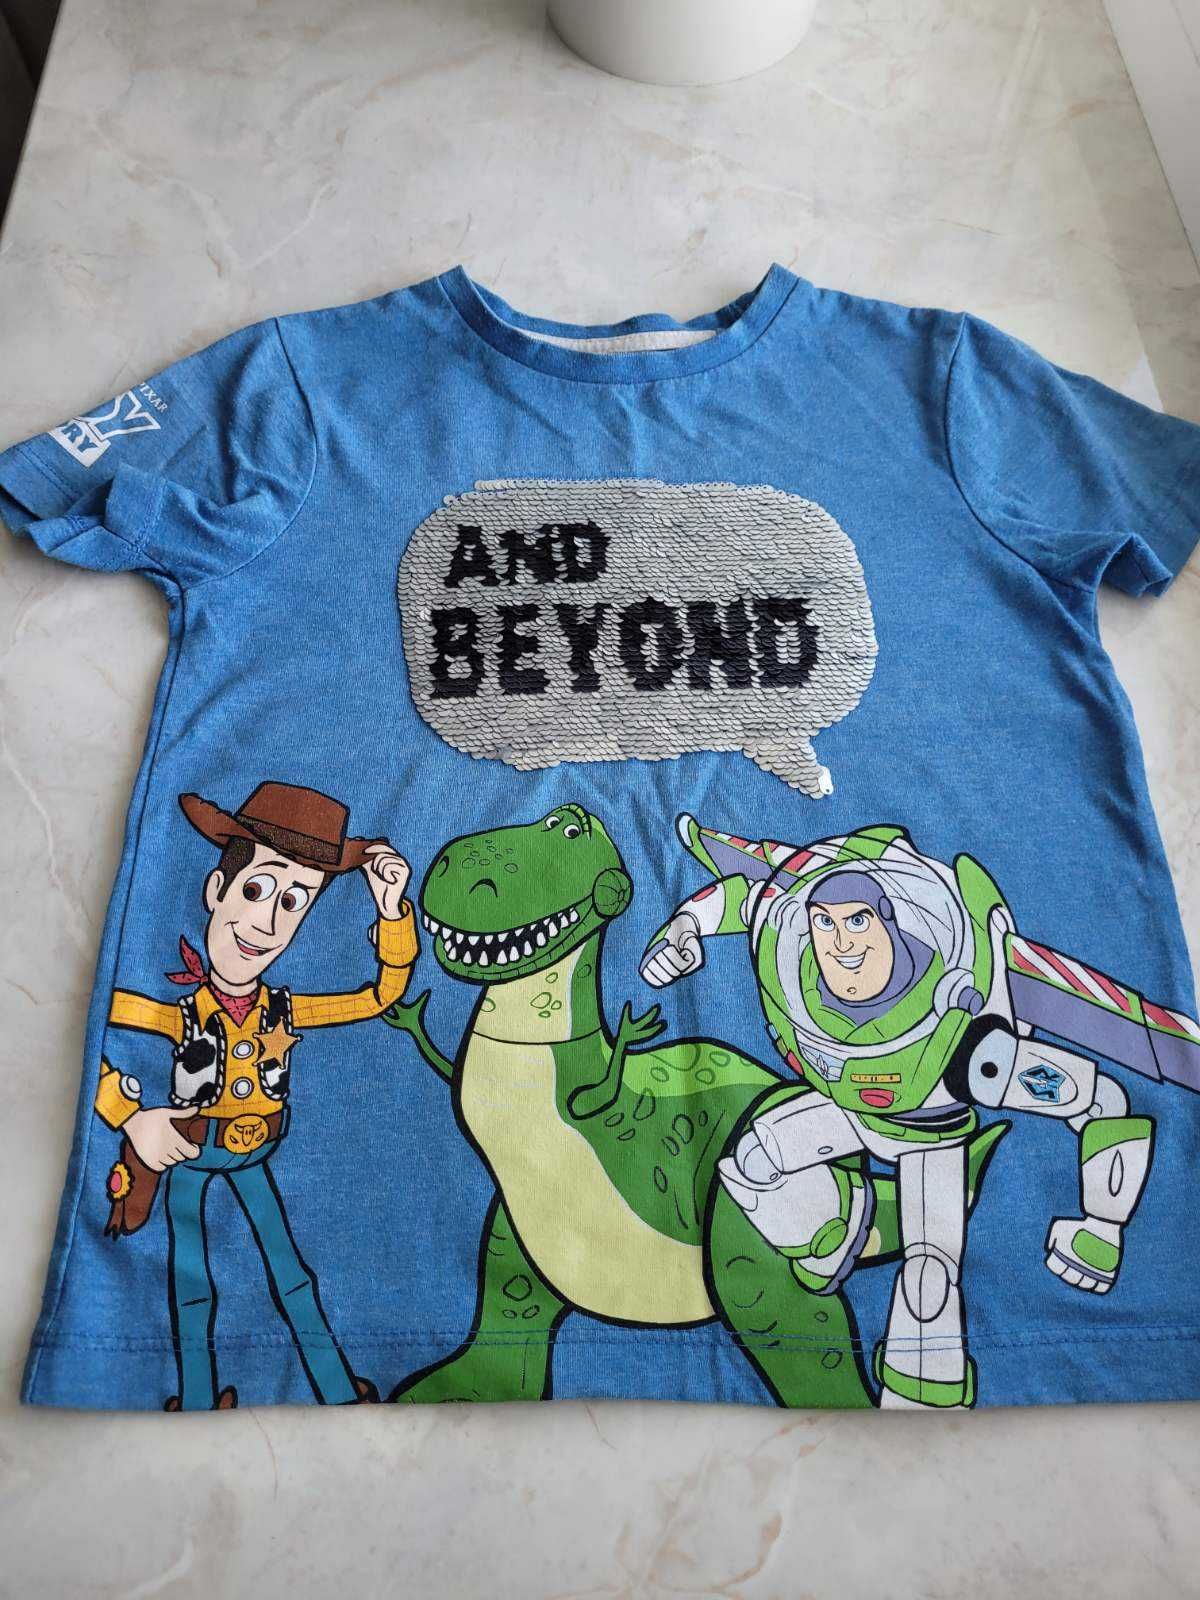 Продам футболку на мальчика 5-6 лет Dysney Pixar